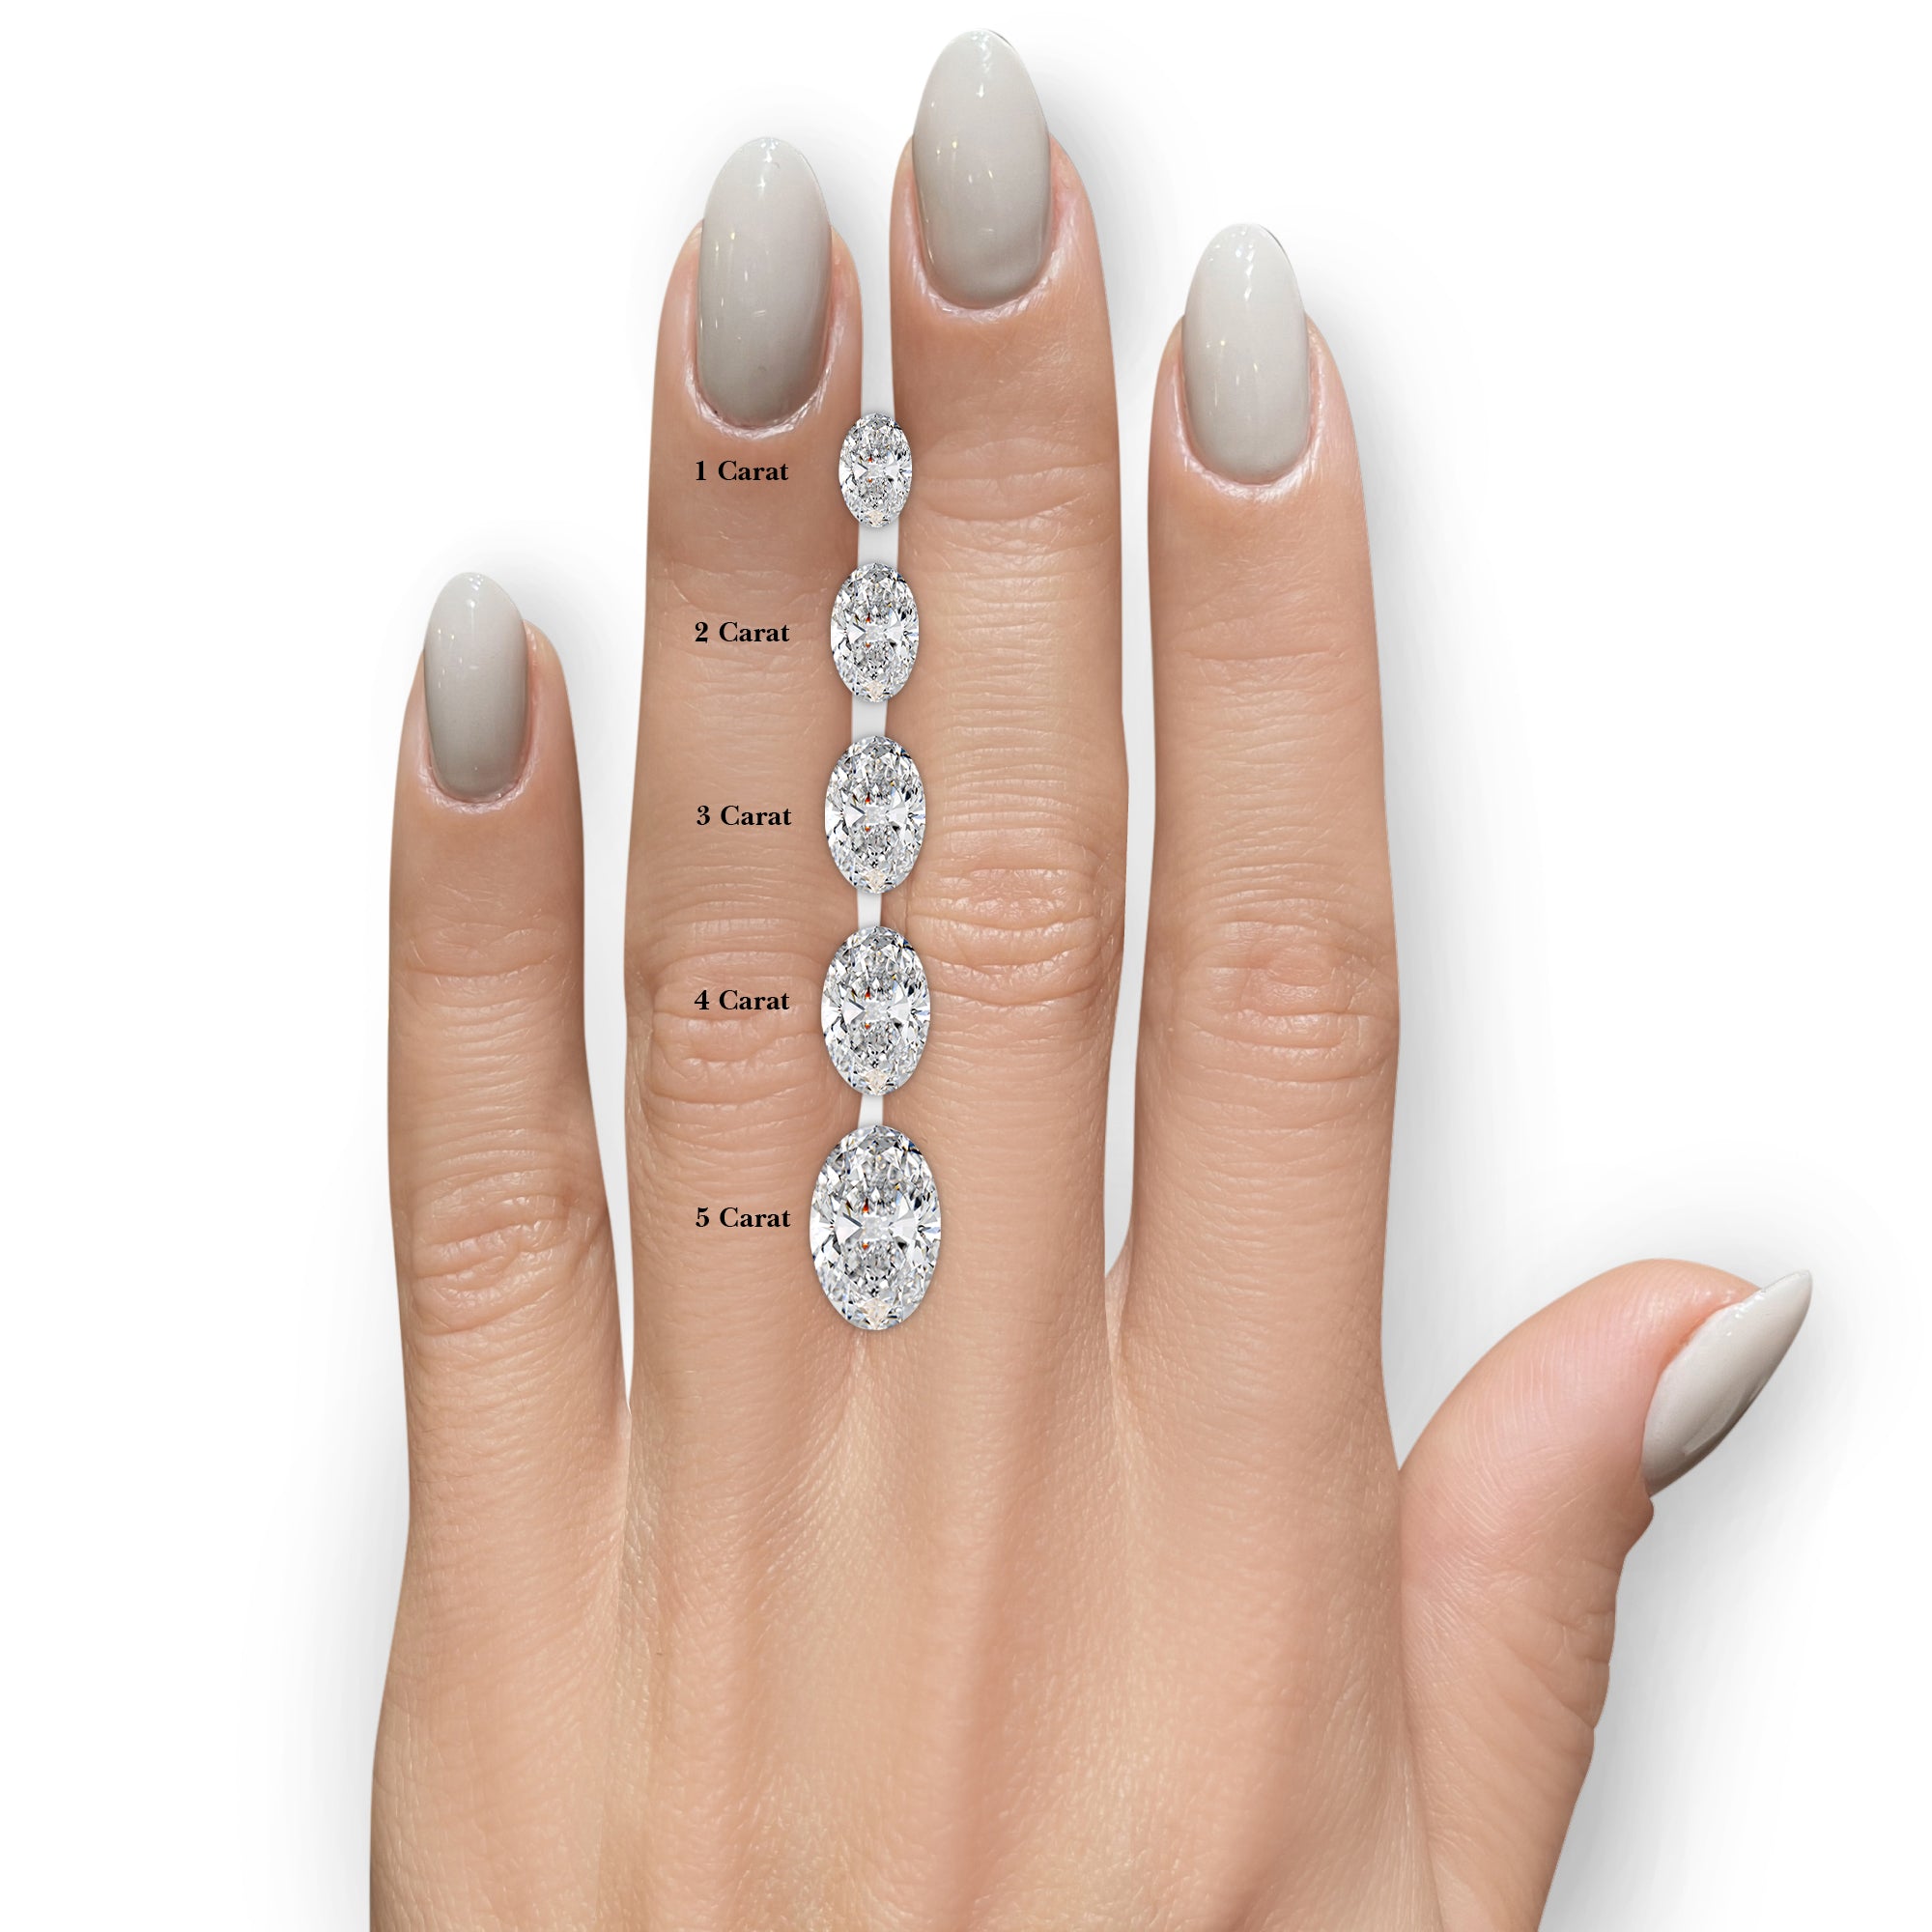 Nora Diamond Engagement Ring   (3 Carat) -18K Yellow Gold